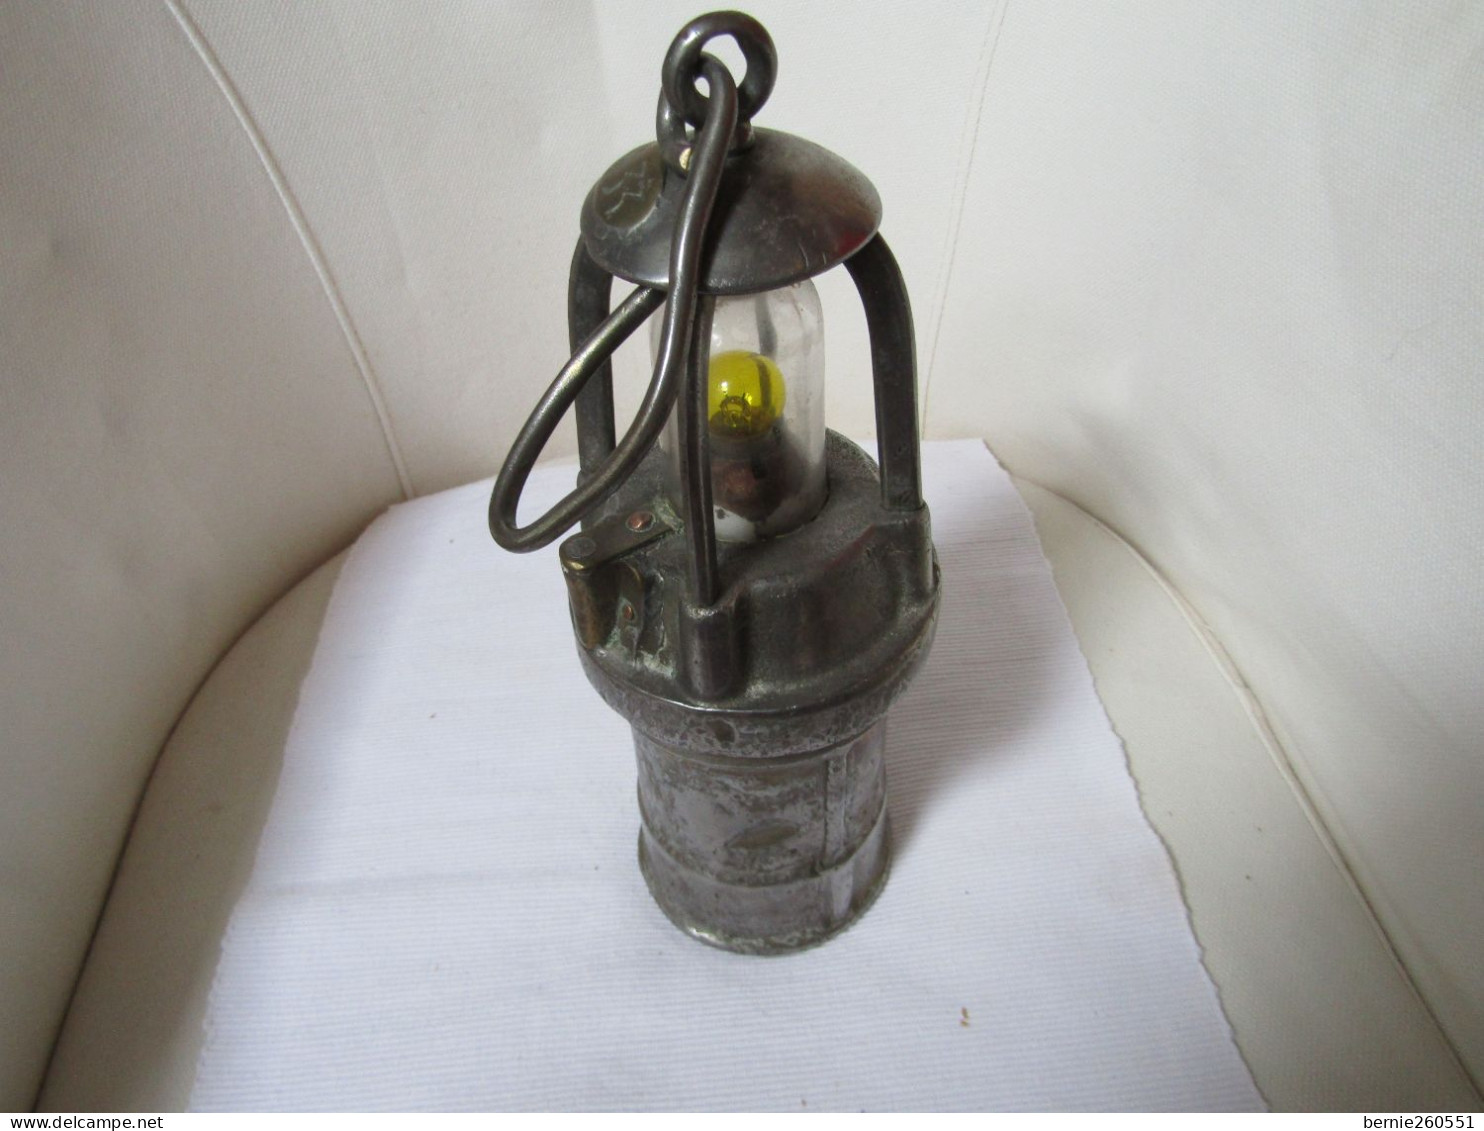 Ancienne lampe de mineur ogival, type Arras électrique